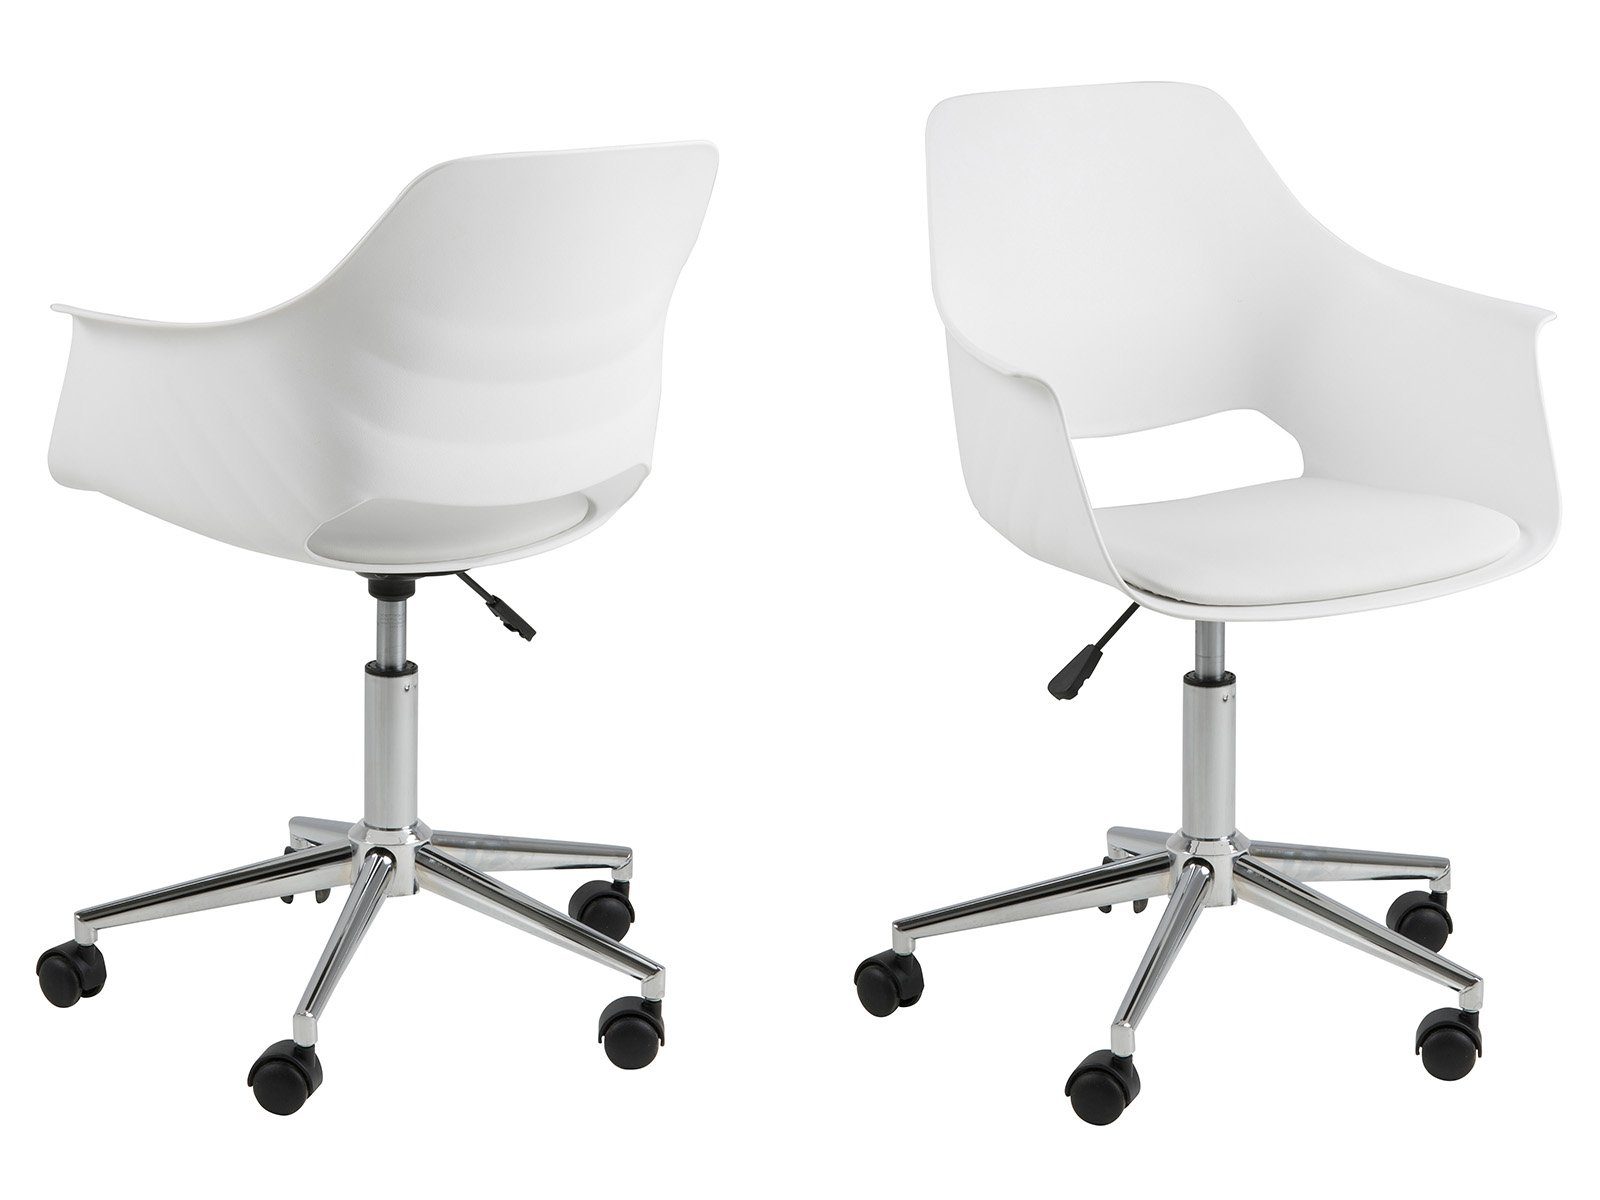 Стул рабочий офисный. Кресло elle MLM-660019 рабочее белый. Офисное кресло Halmar Franklin. Стул компьютерный белый. Рабочий стул белый.